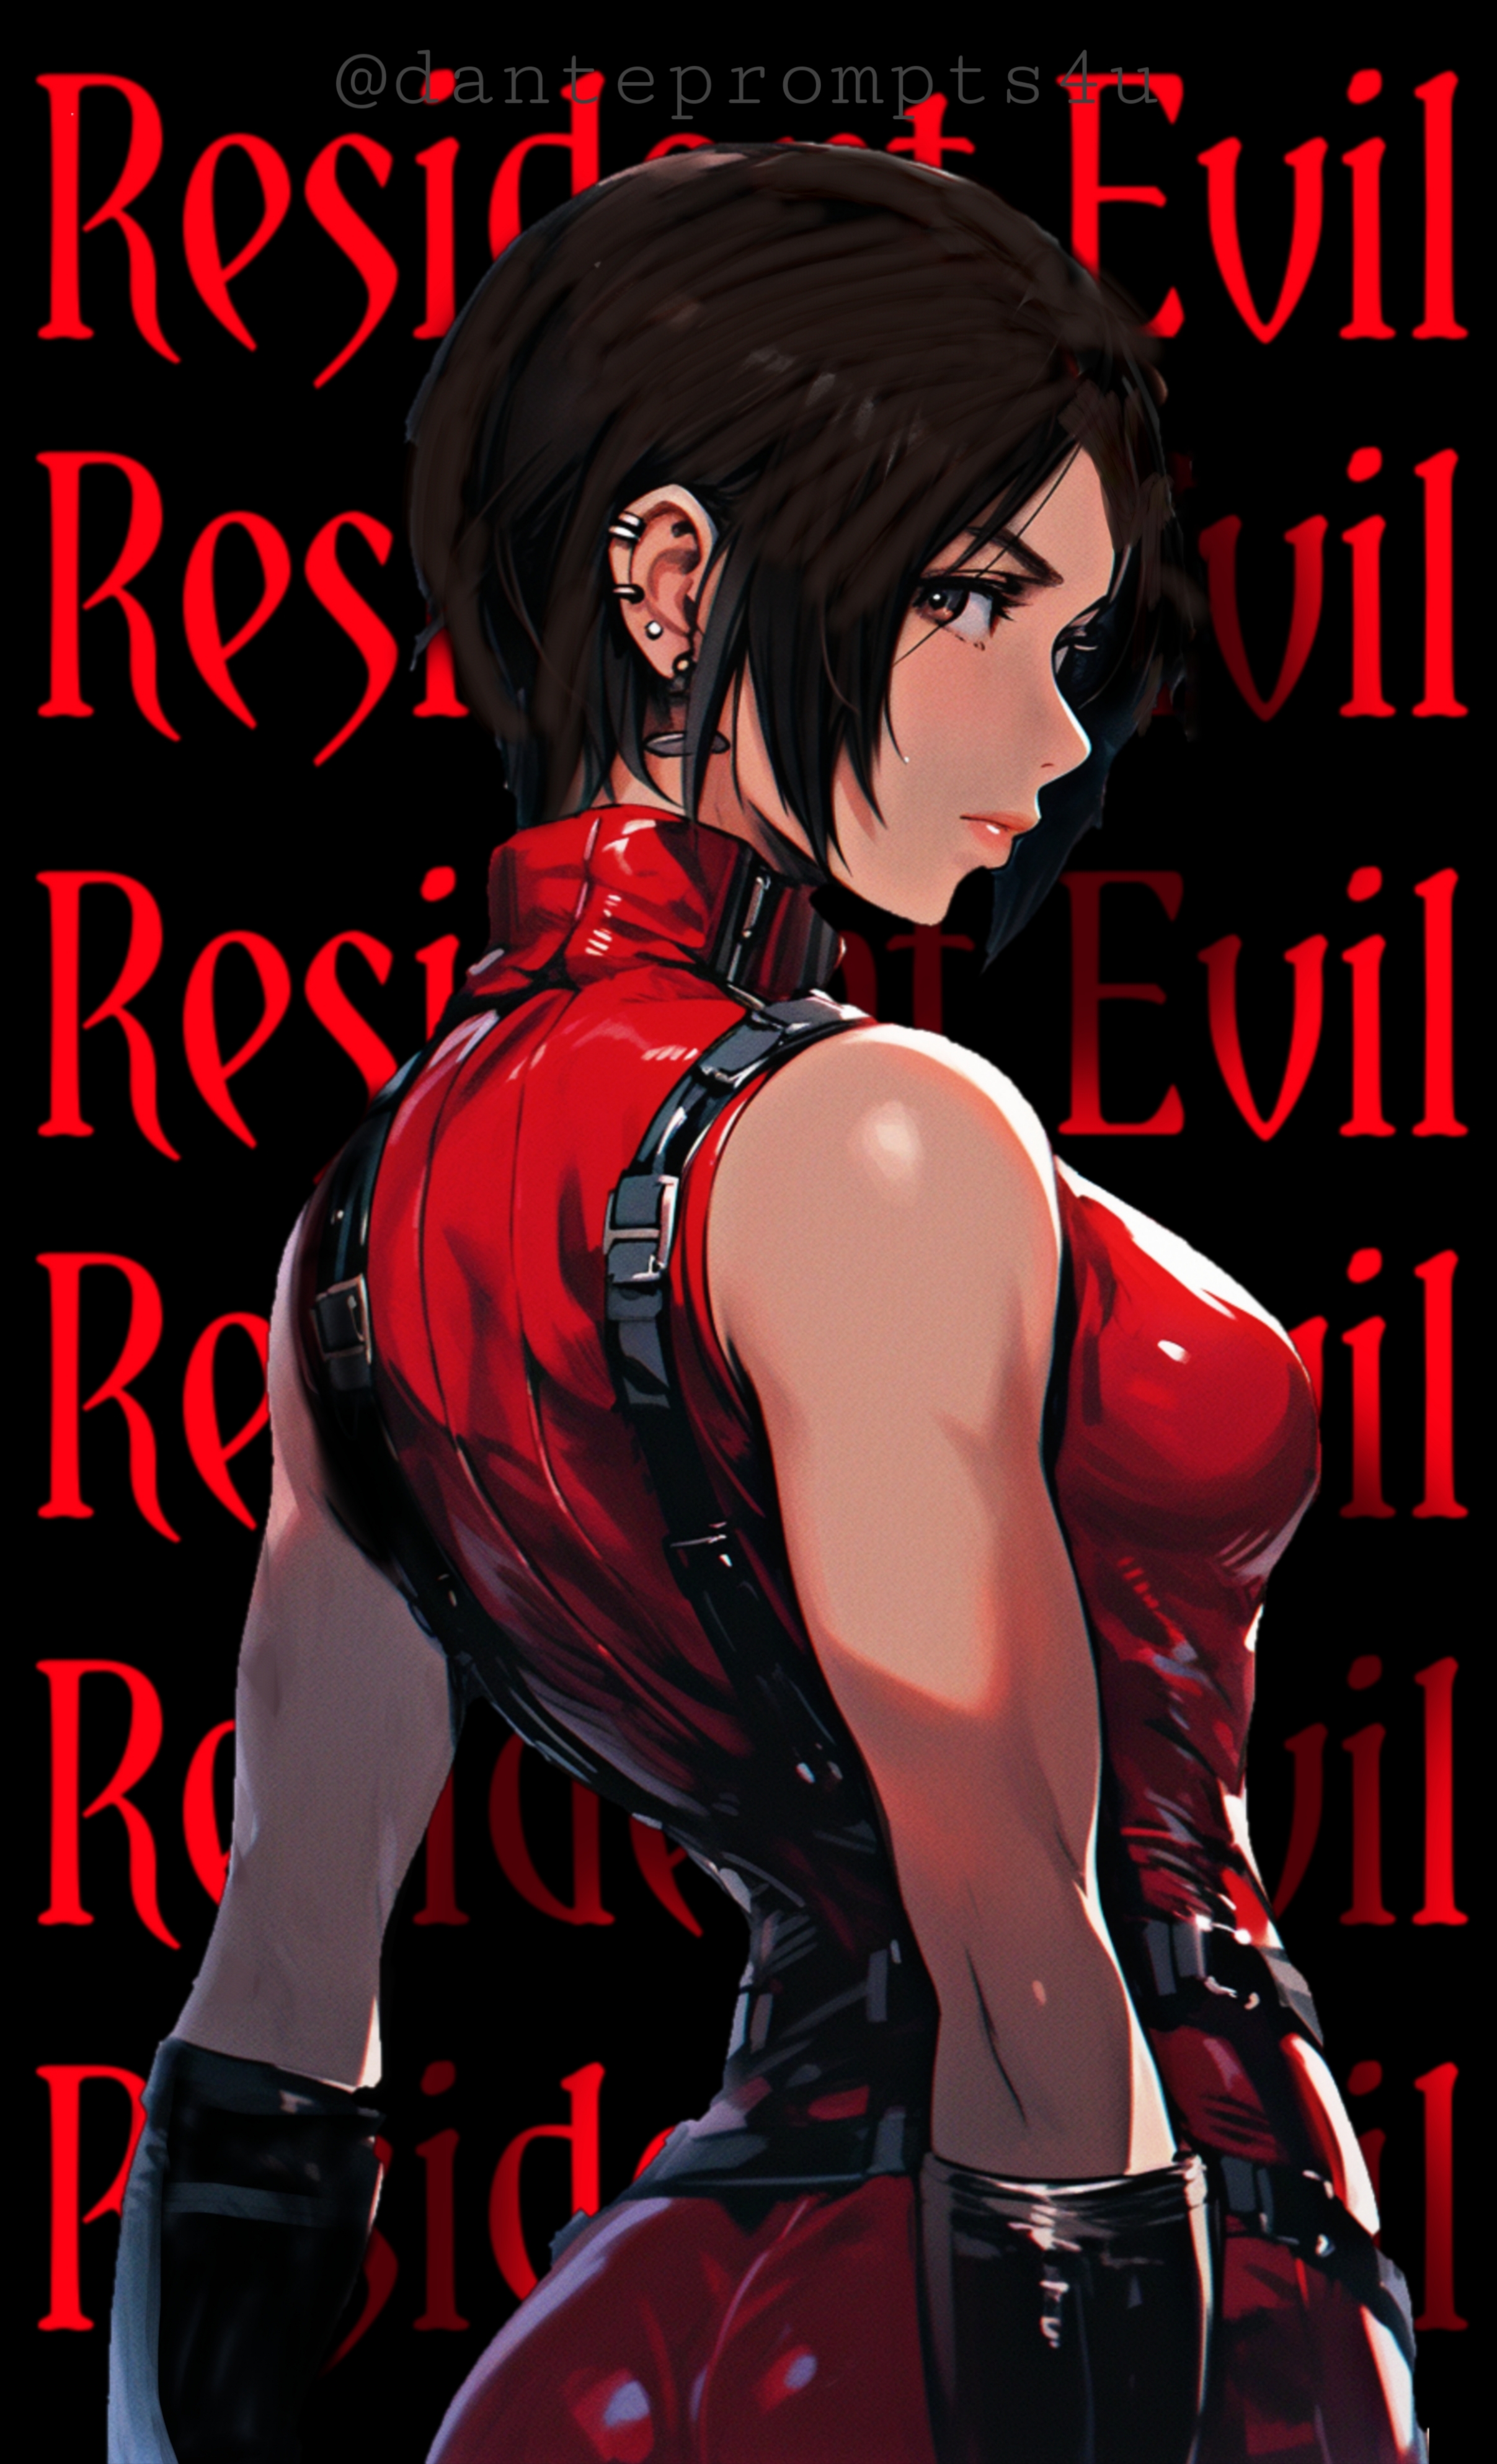 Ashley Graham (Resident Evil 4) by igorbiohazard on DeviantArt